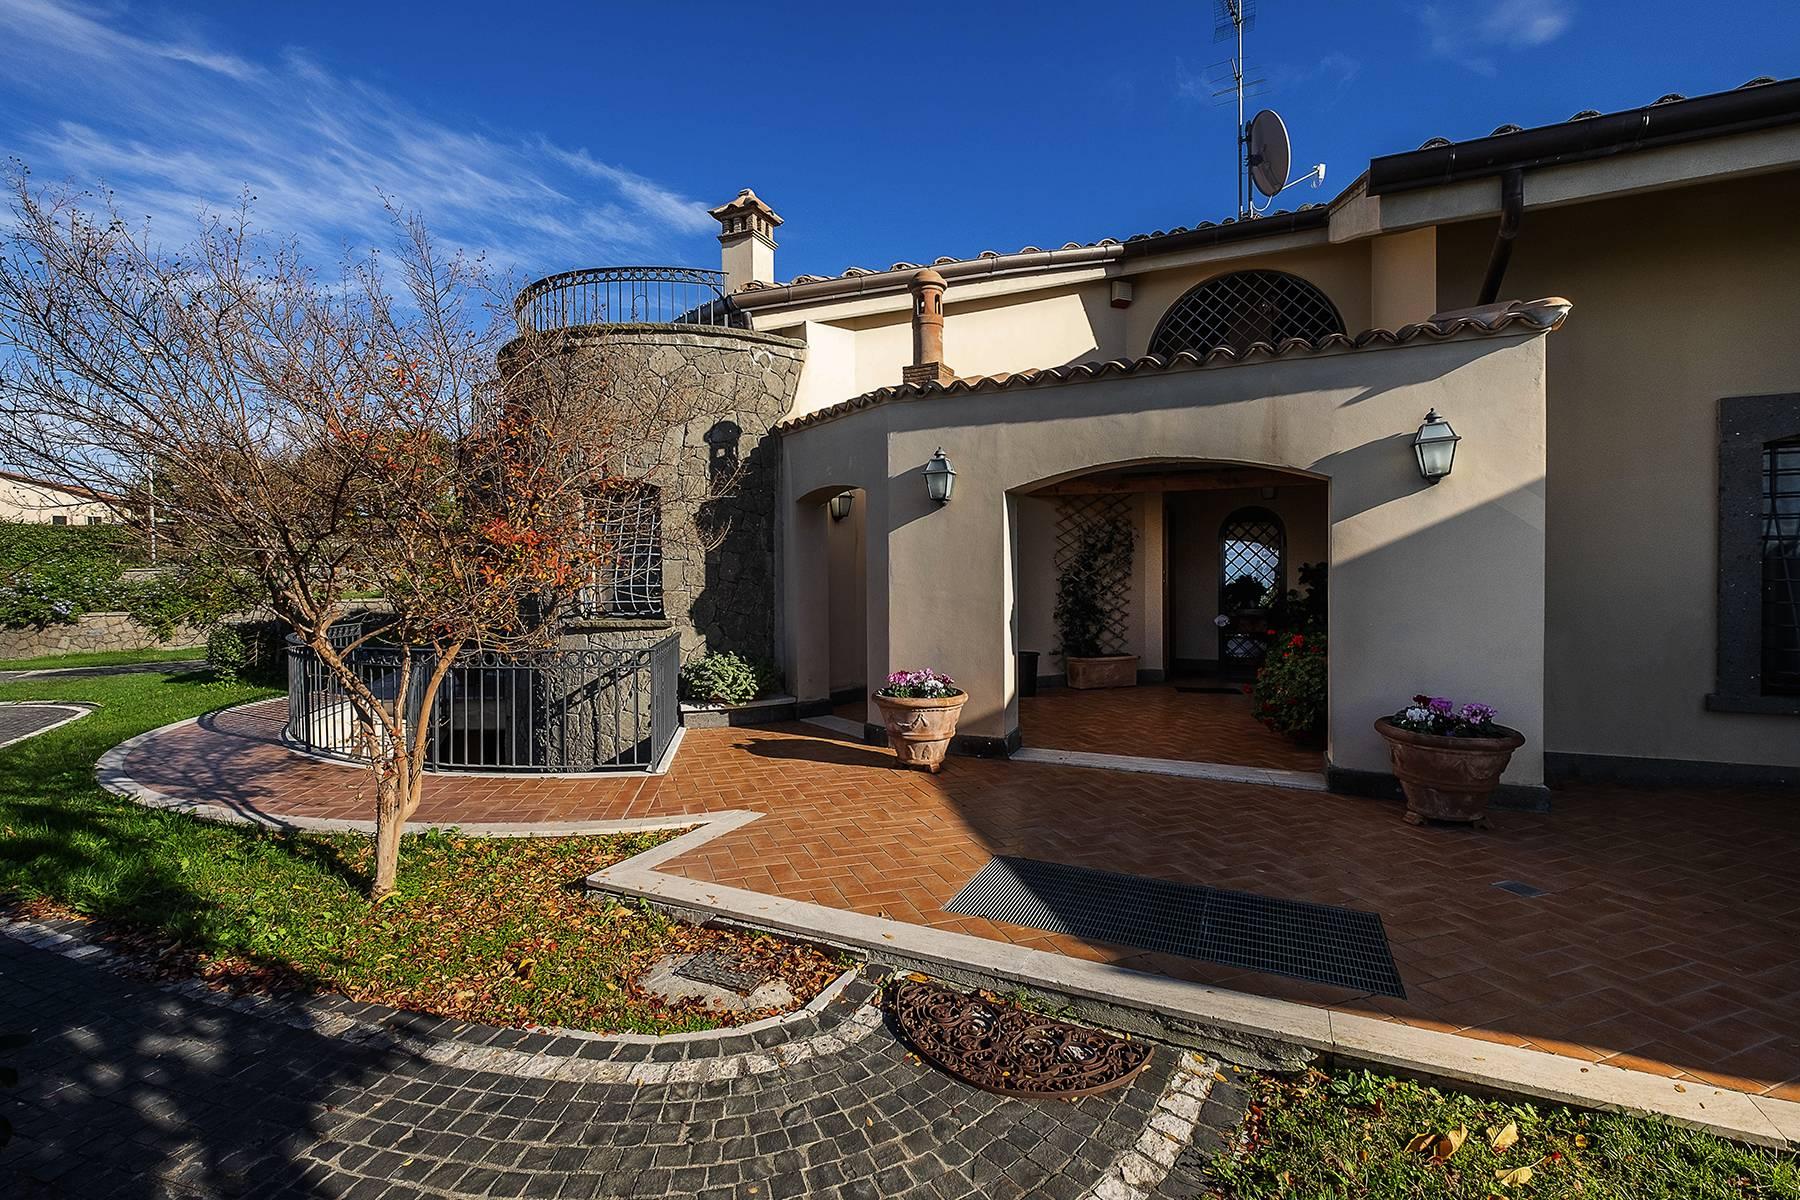 Villa in Frascati Stadtgebiet mit herrlichem Blick auf die Ewige Stadt - 1